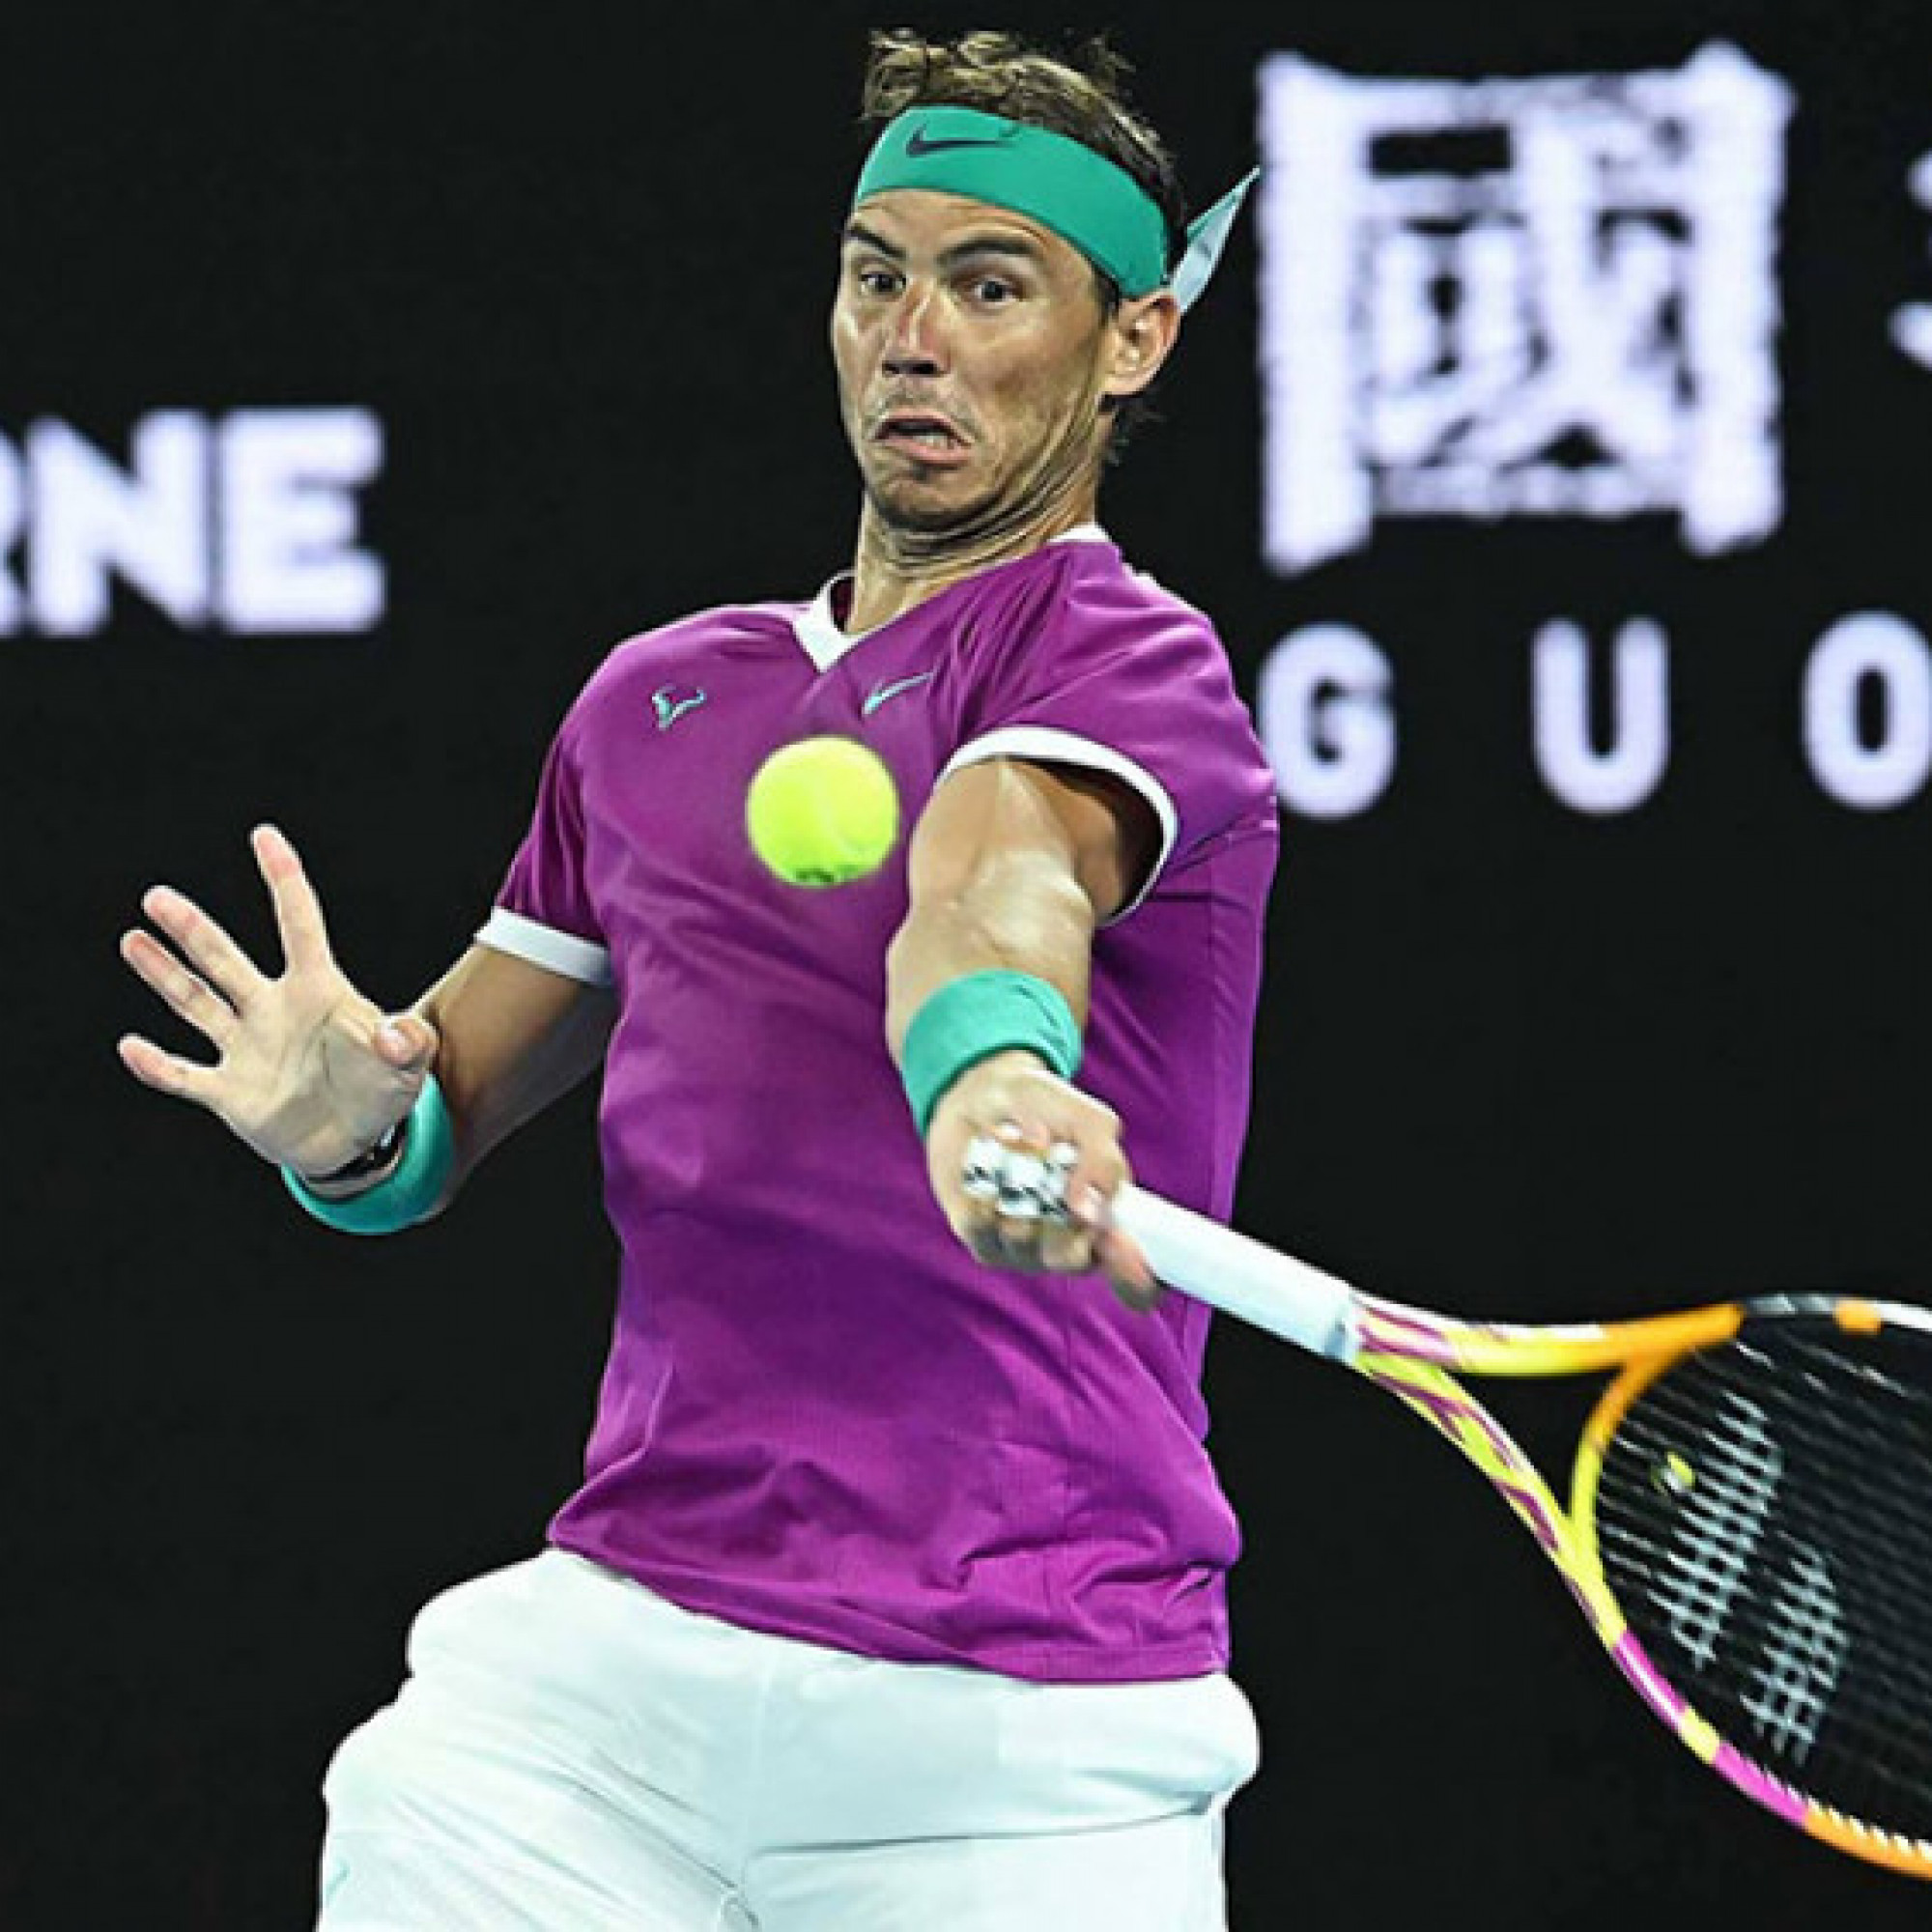  - Trực tiếp tennis Shapovalov - Nadal: "Vua đất nện" thắng set 2 (Tứ kết Australian Open)